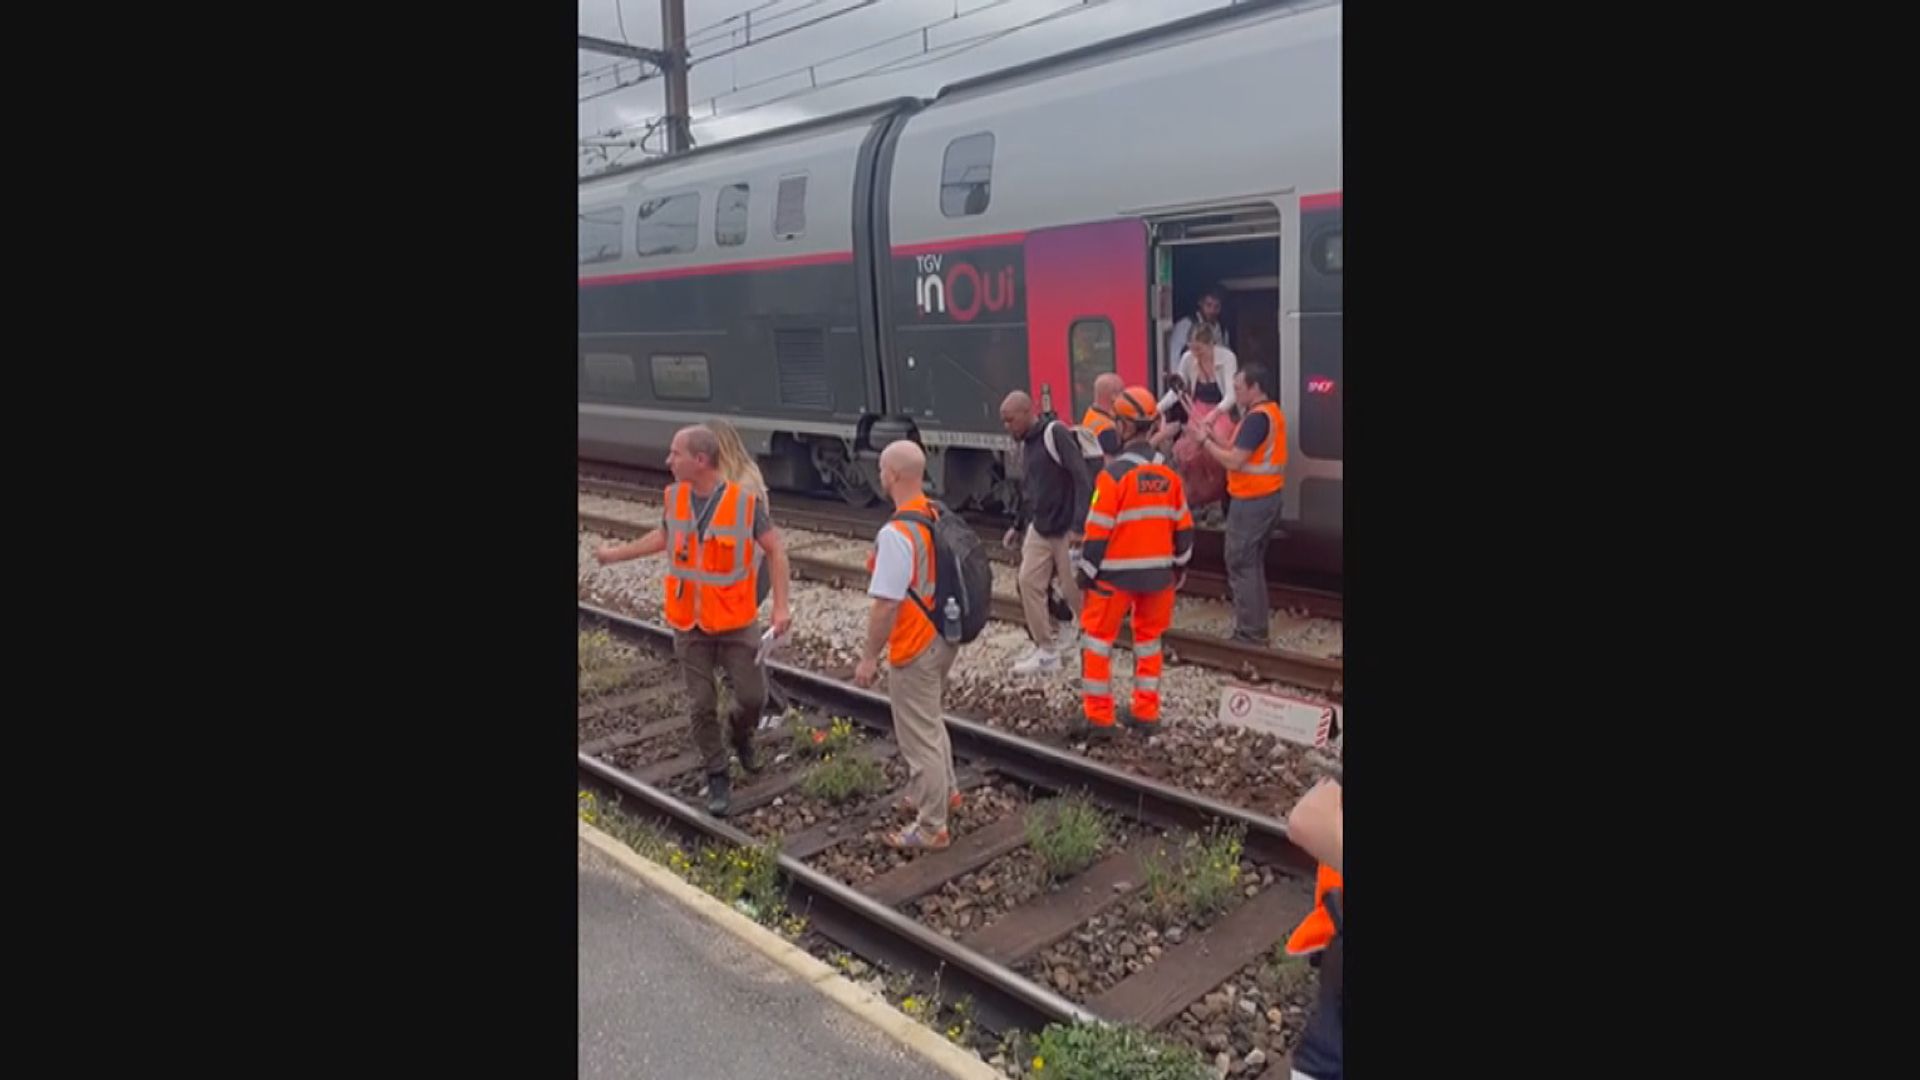 法國高鐵網絡遭連串縱火破壞　消息指疑涉極左翼或環保人士